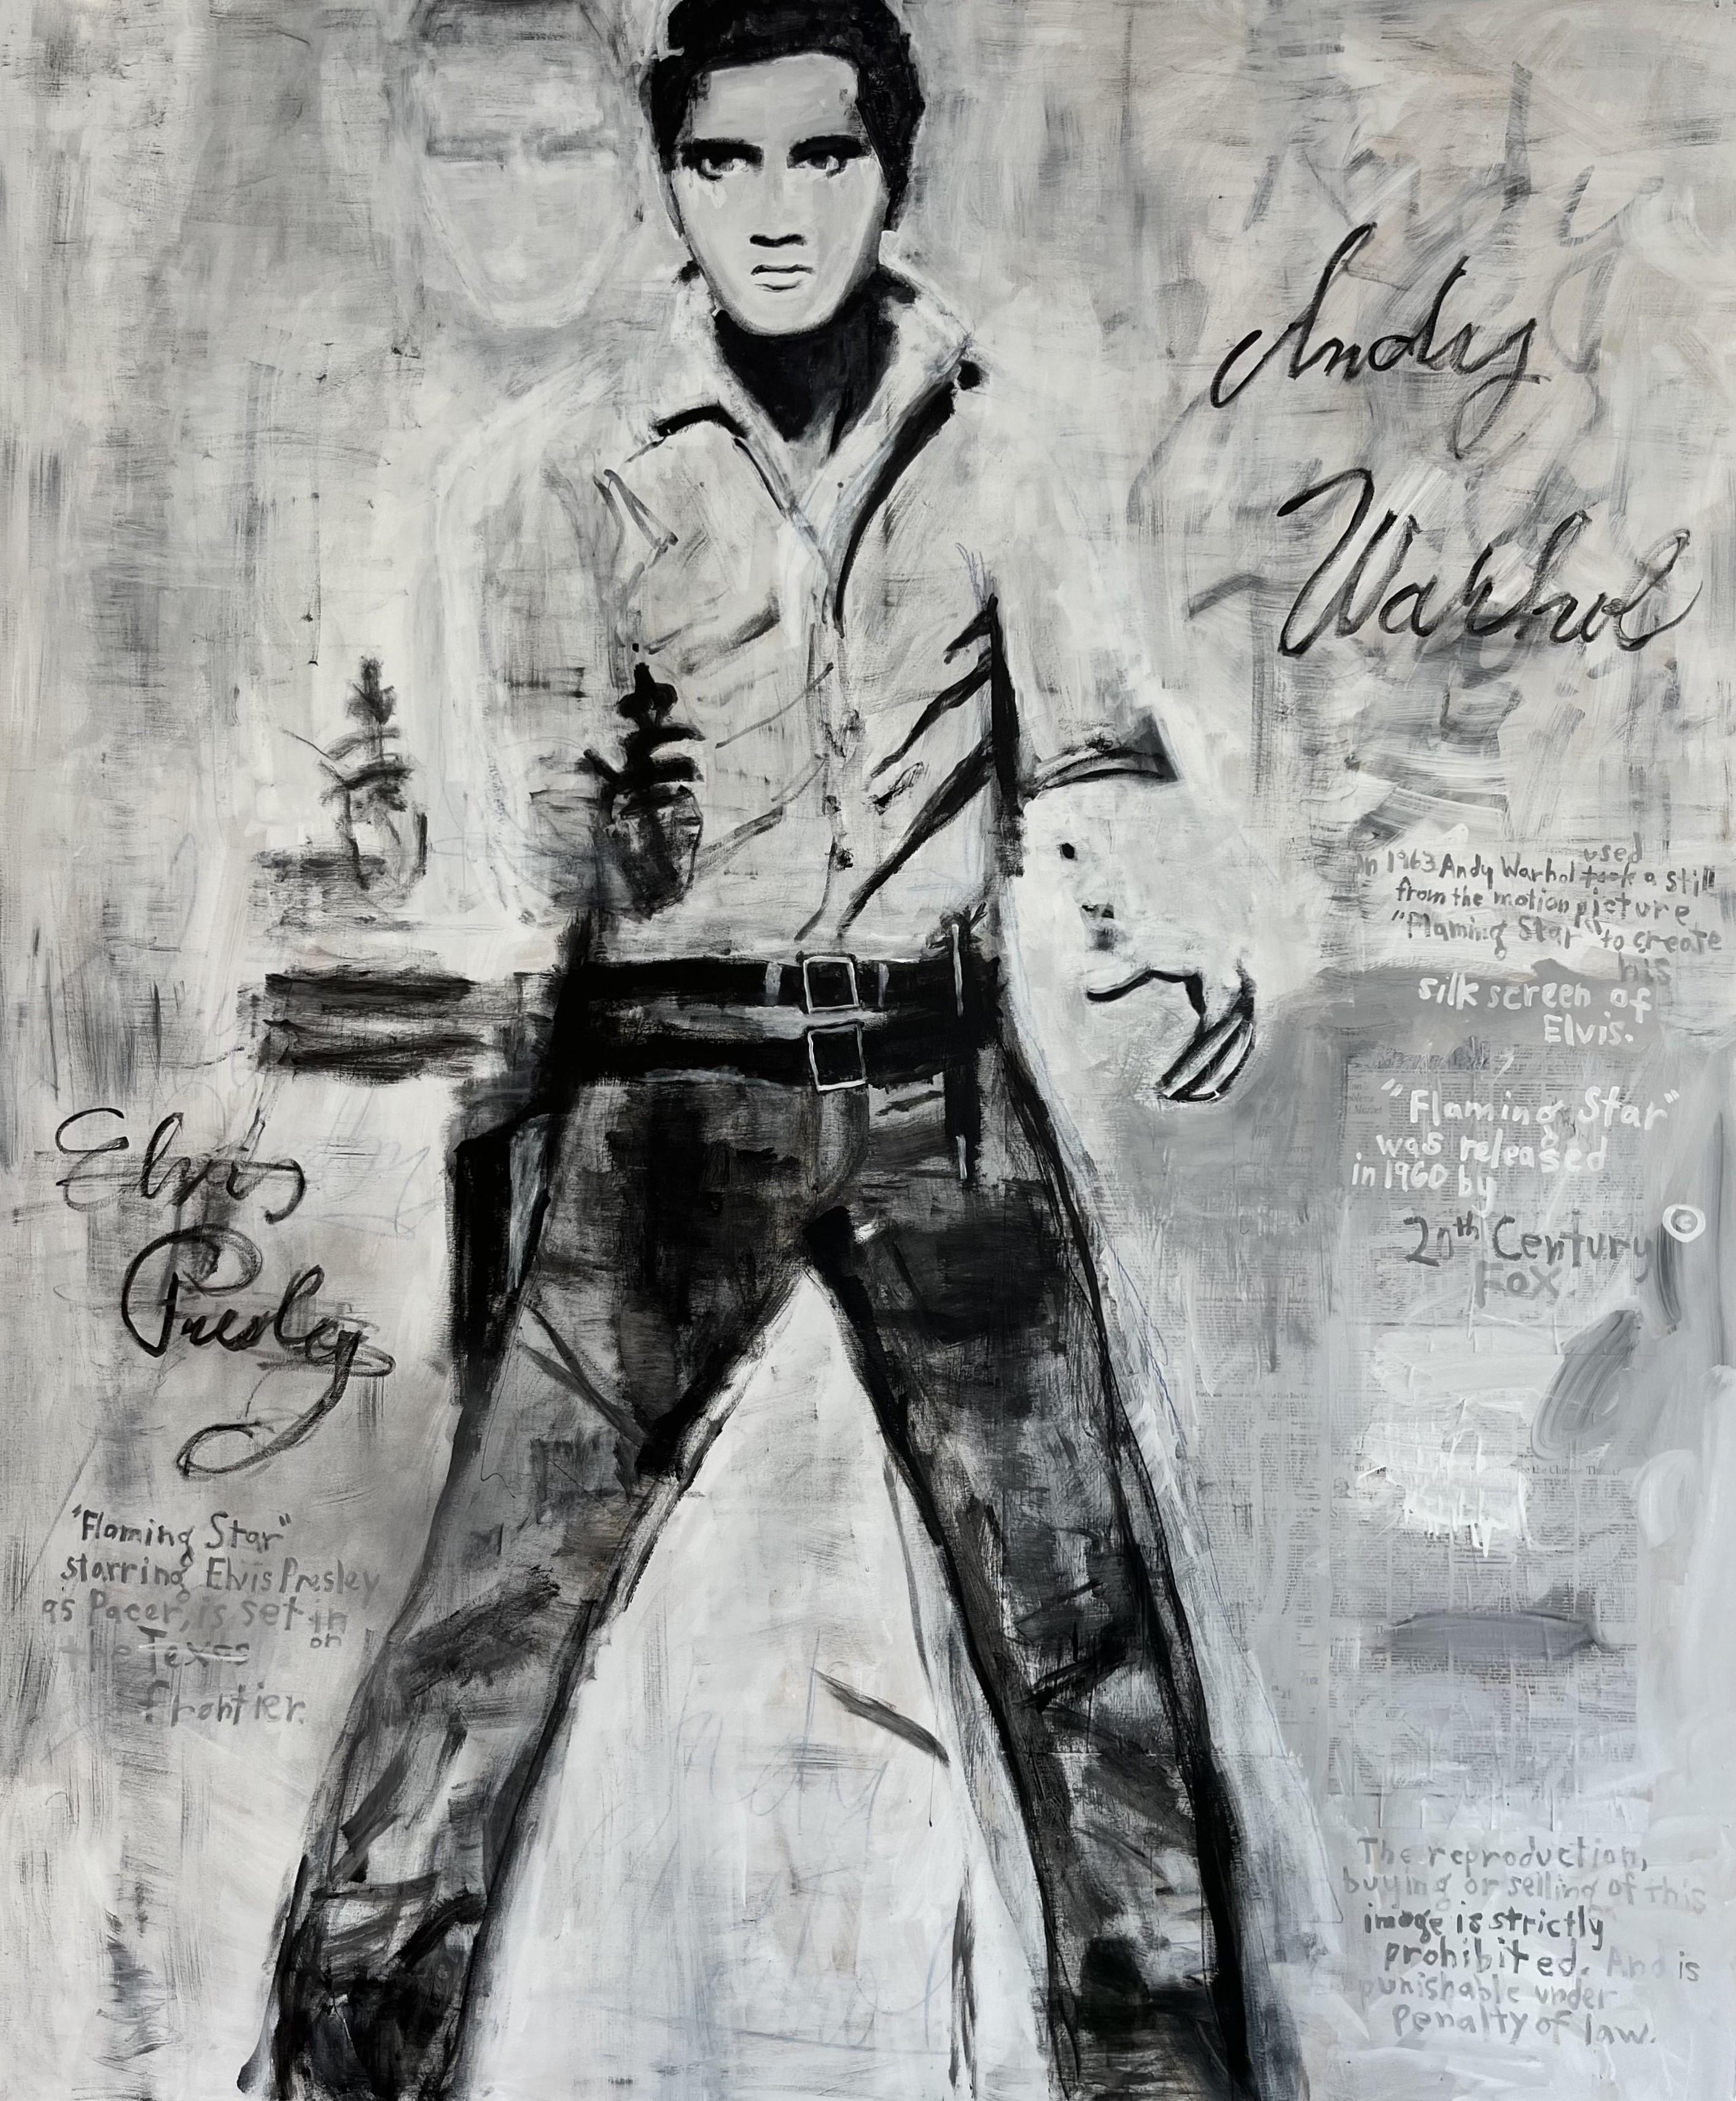 "Elvis" Contemporary Abstract Schwarz/Weiß Andy Warhol inspirierte Pop Art Malerei